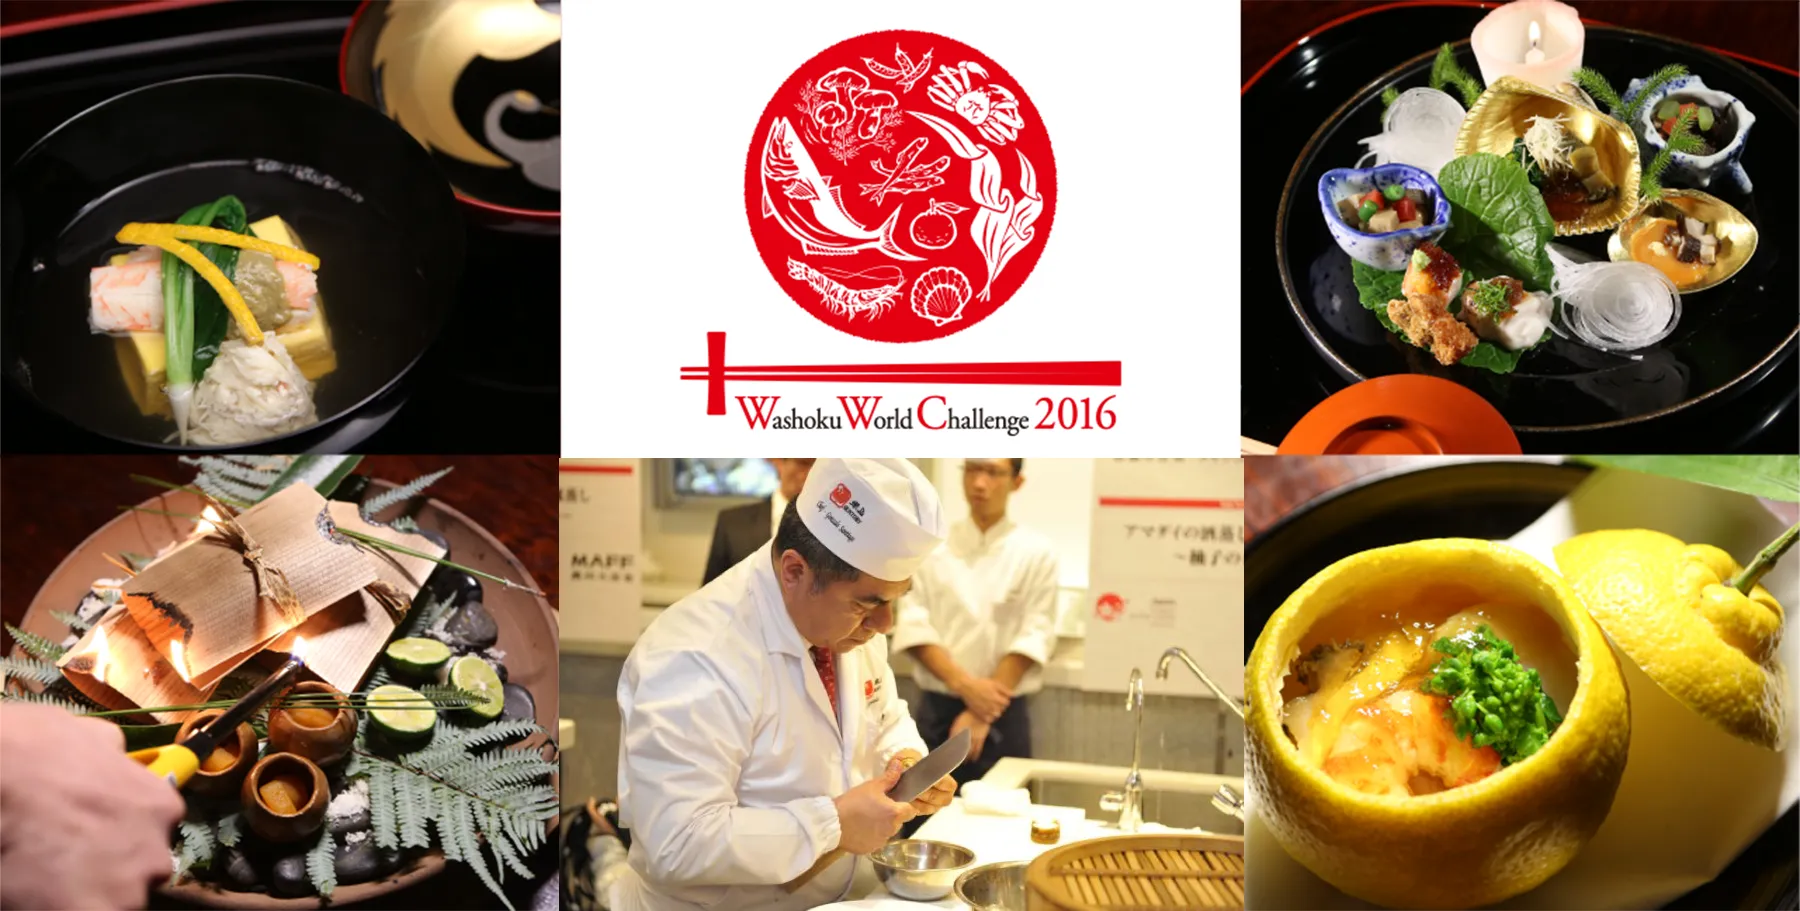 Washoku World Challenge 2016 se llevará a cabo el 15 de diciembre en Tokio